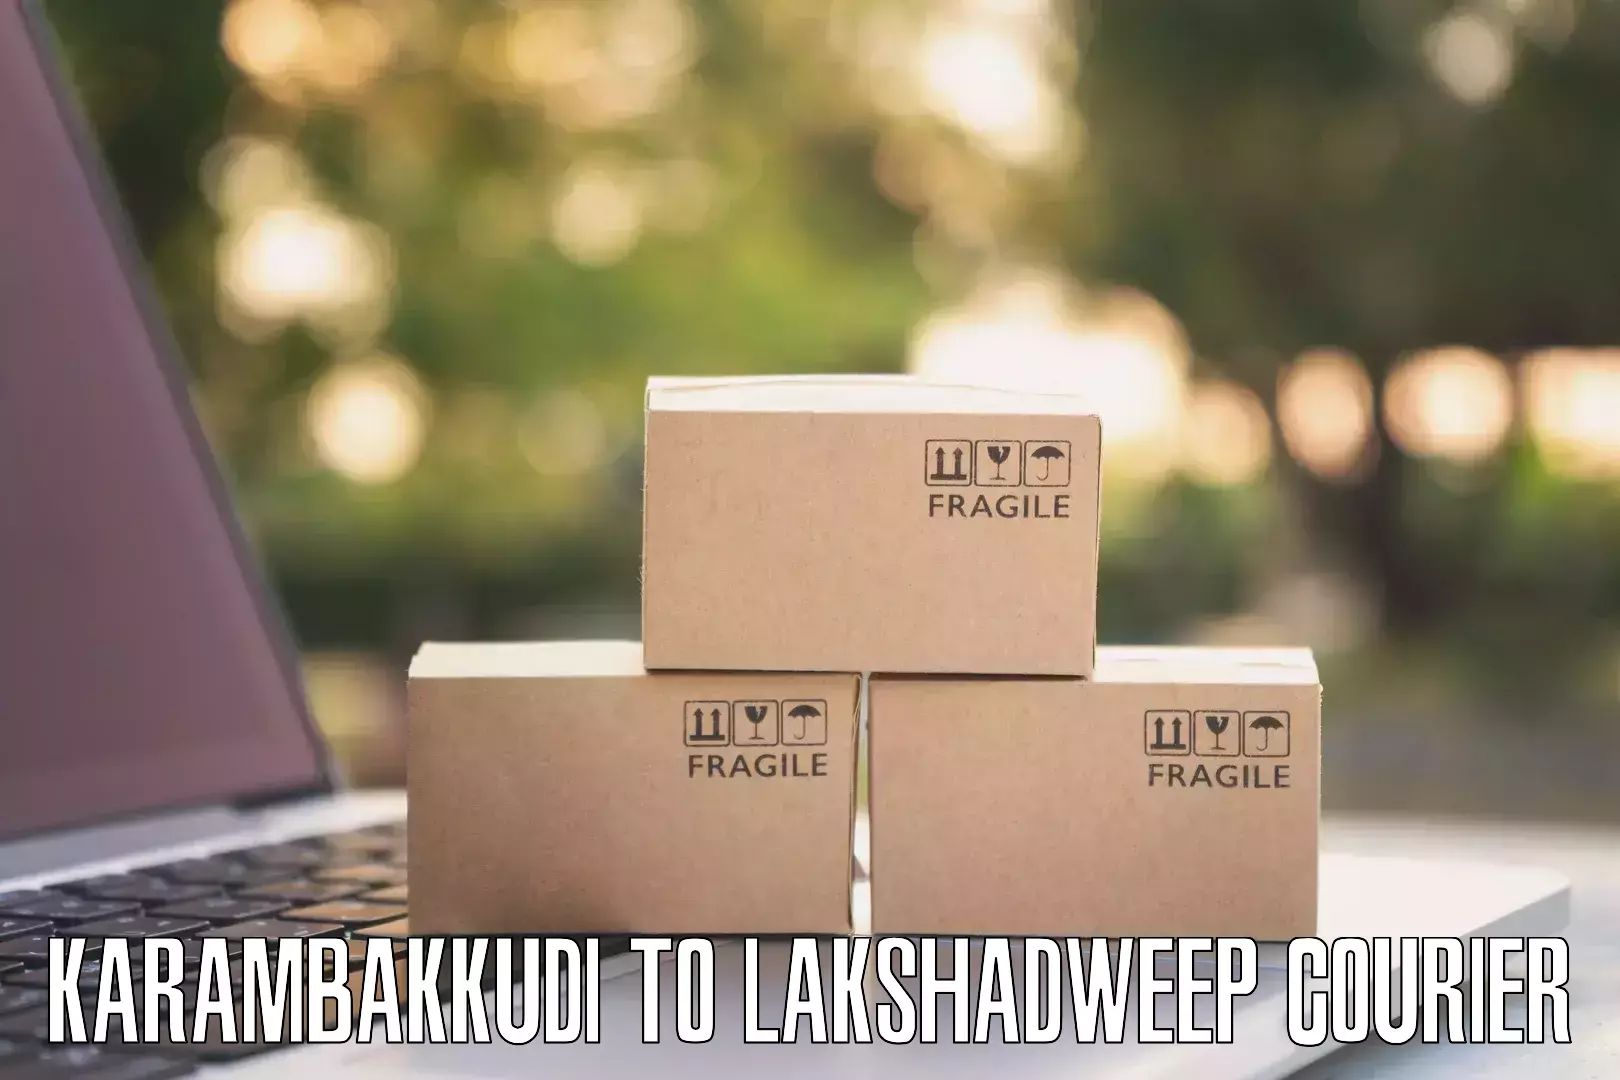 Efficient parcel transport Karambakkudi to Lakshadweep